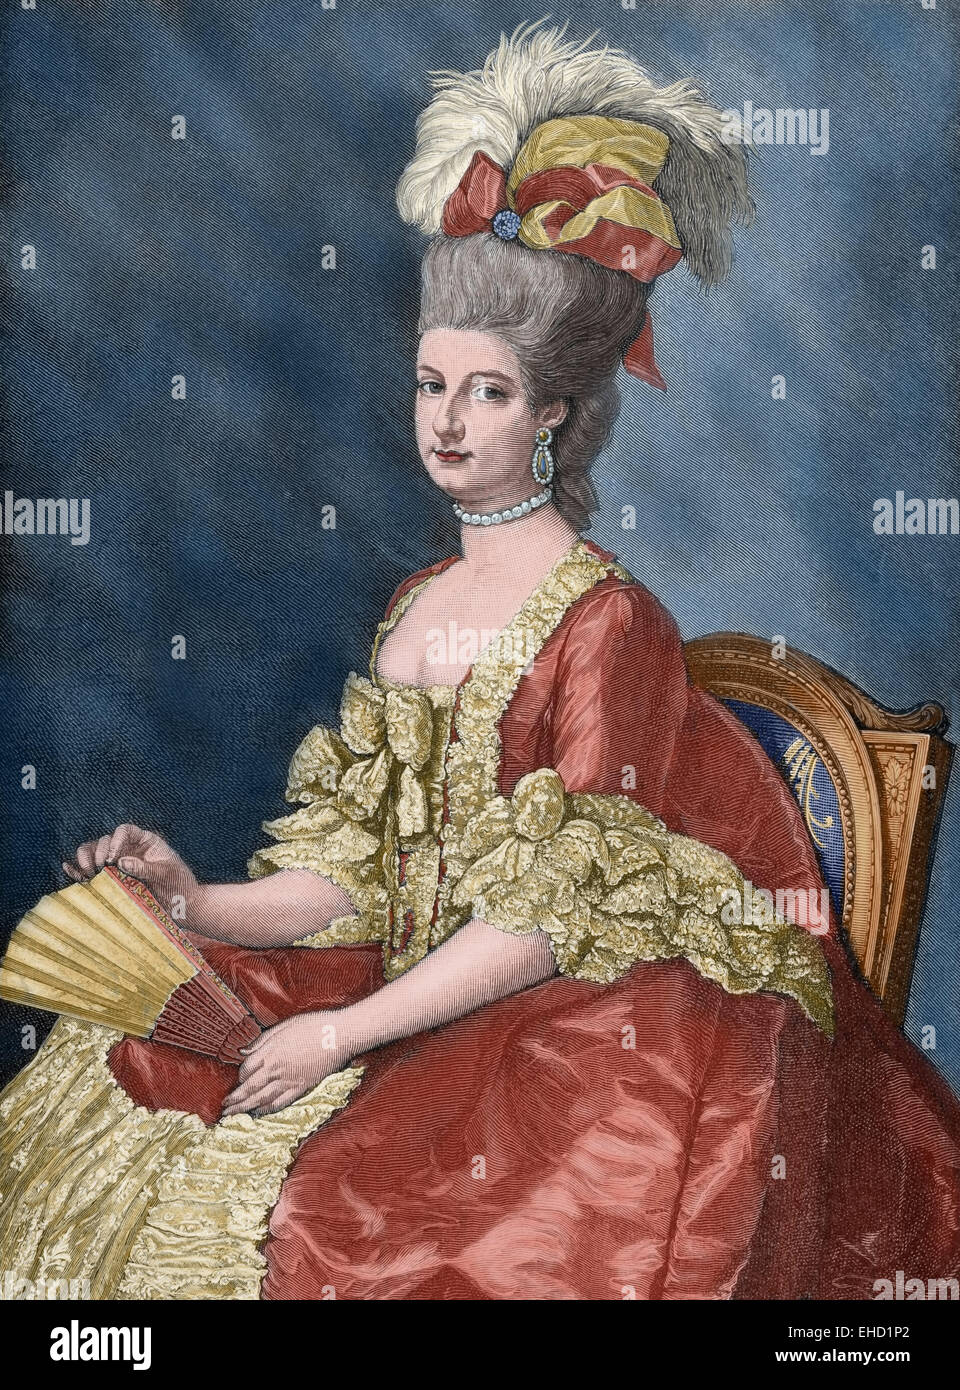 Maria Cristina, duchessa di Teschen (1742-1798), denominato "imi', era il governatore dei Paesi Bassi Austriaci dal 1781 fino al 1793. Ritratto. Incisione in "Historia universale", 1885. Colorati. Foto Stock